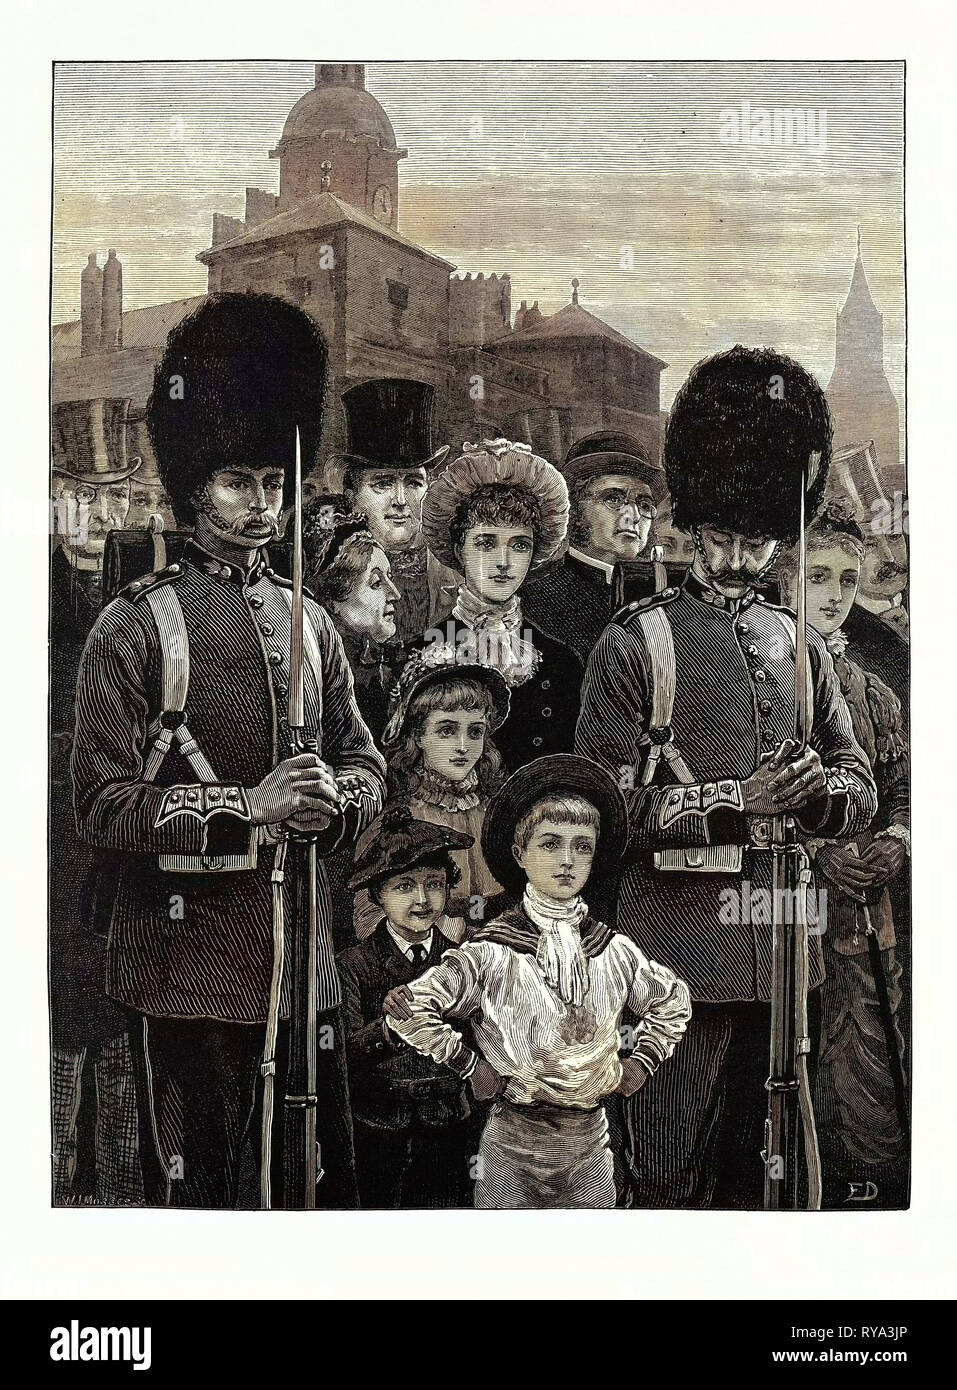 El cumpleaños de la reina: Un bosquejo en el Desfile de los guardias a caballo, Reino Unido, 1883 Foto de stock